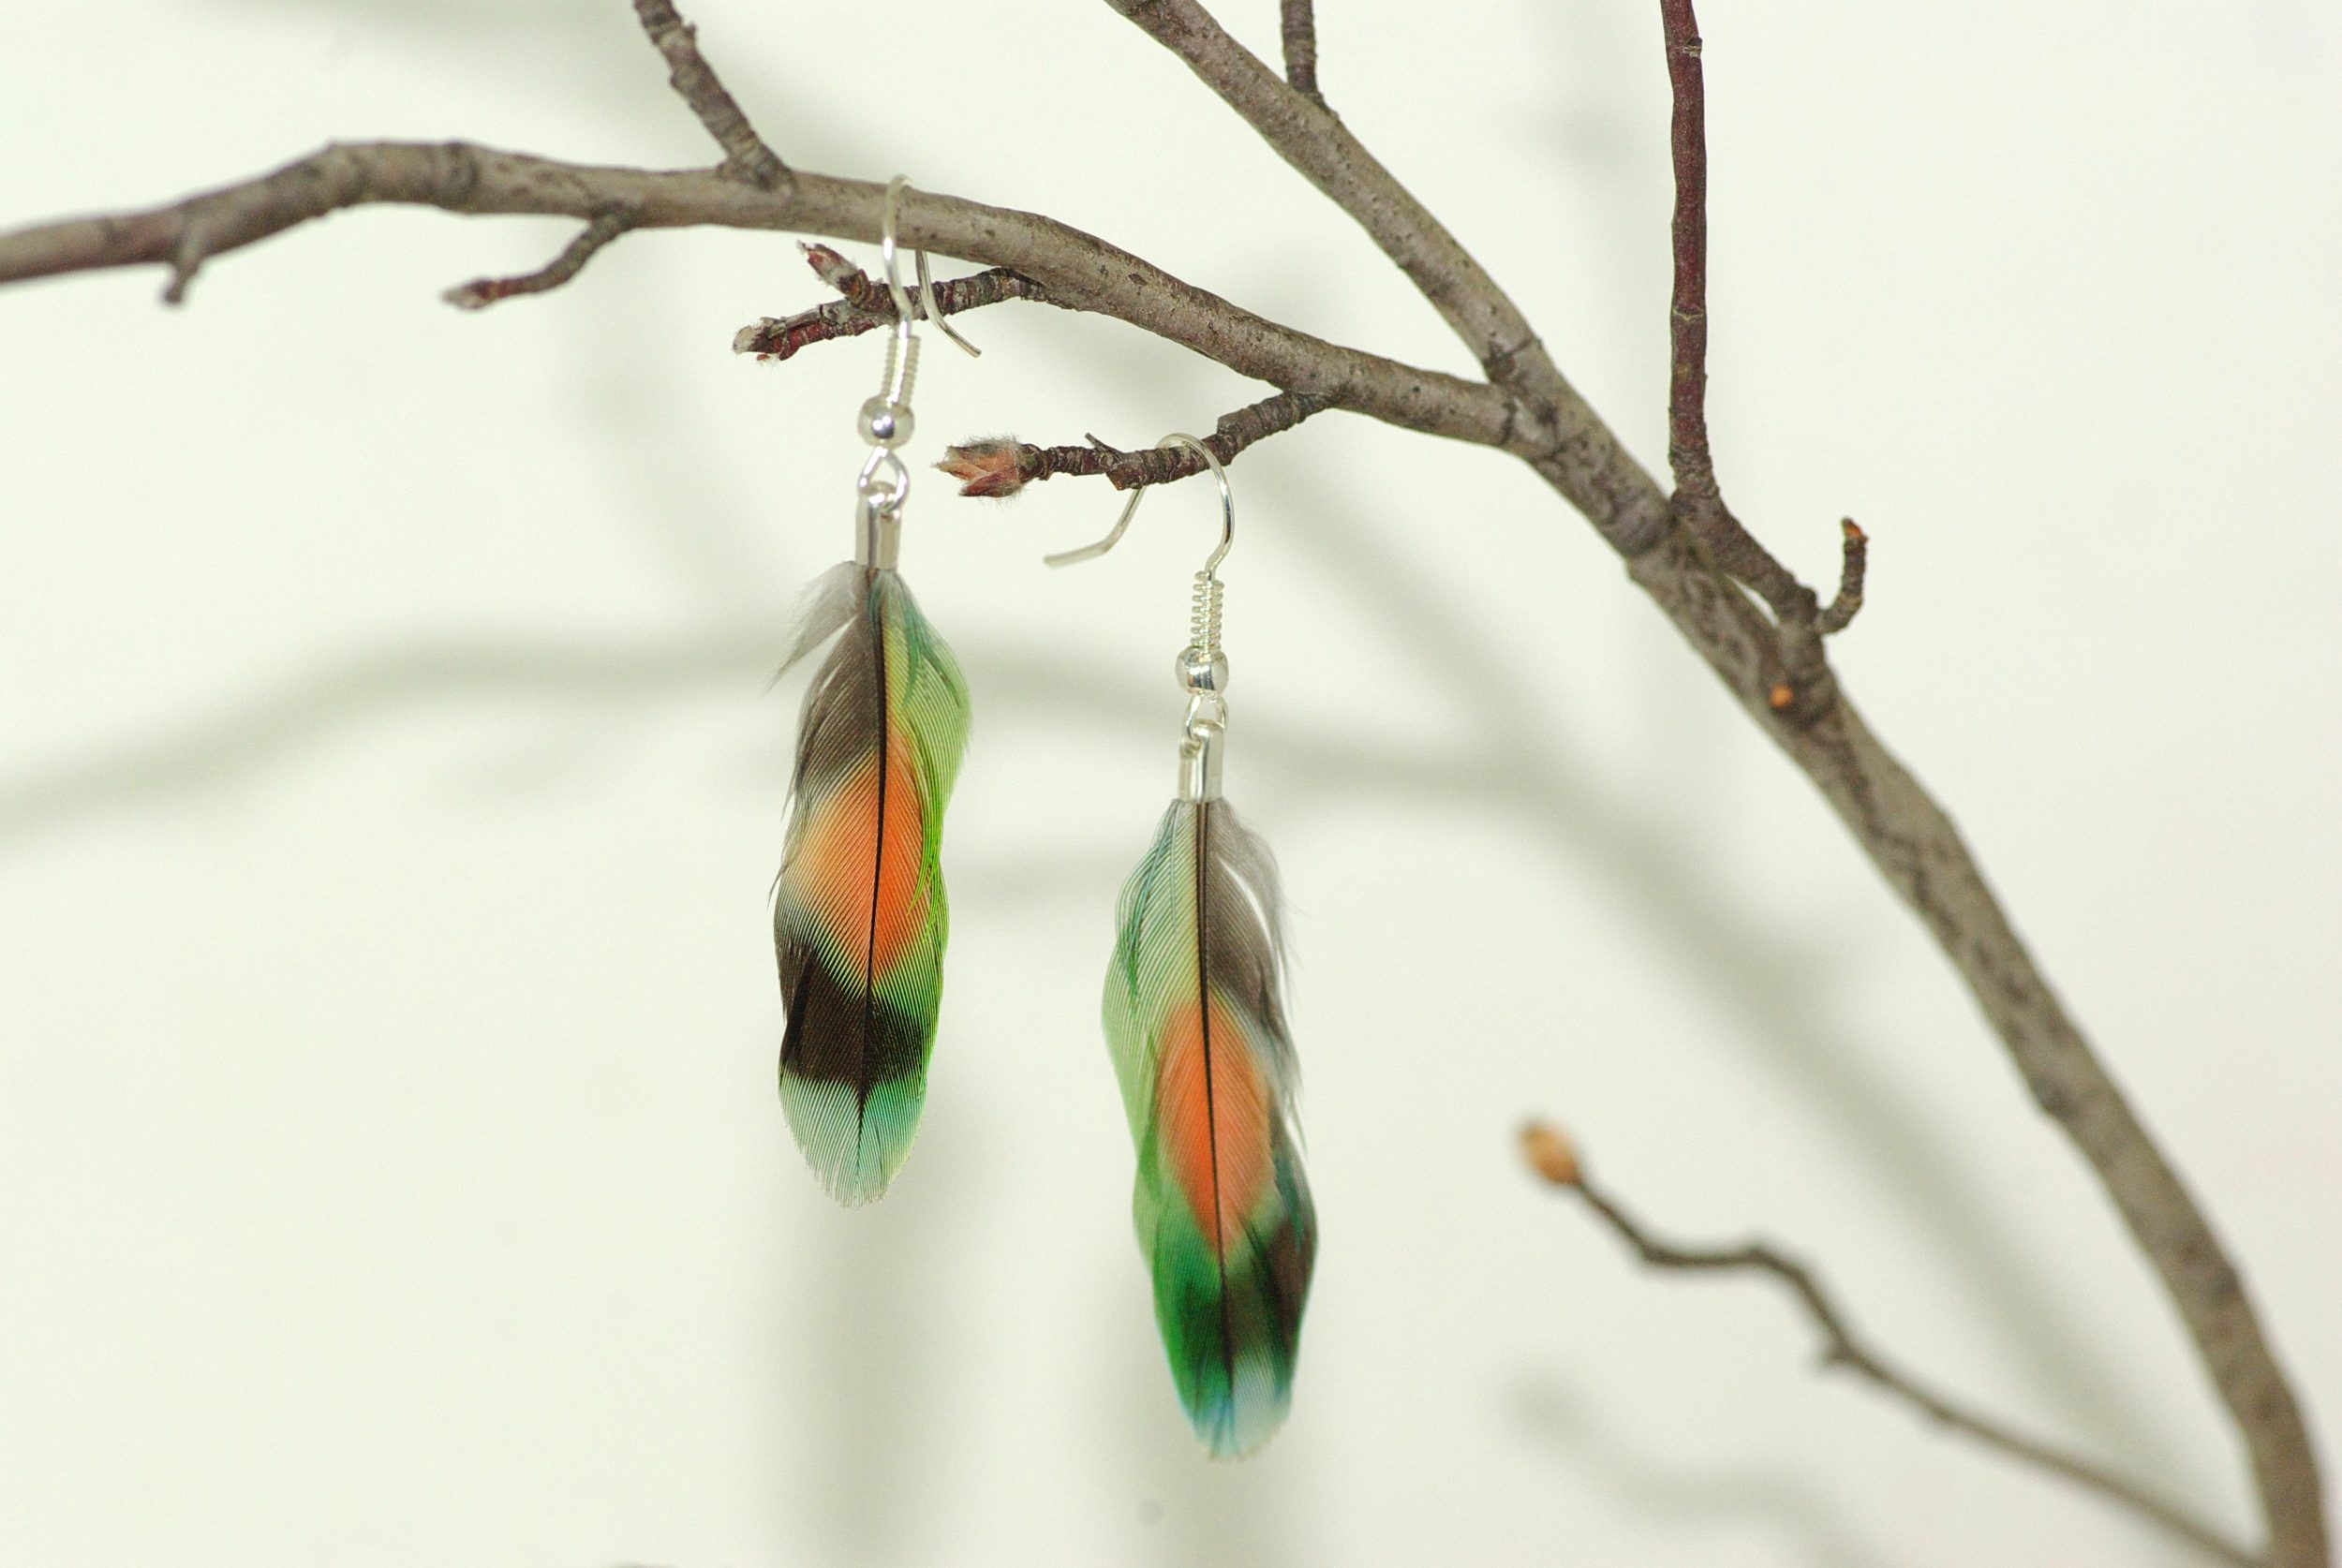 plume multicolore : tache rouge entourée de vert, bleu et noir, montage minimaliste en boucles d'oreiles, orésenté accroché à une branche